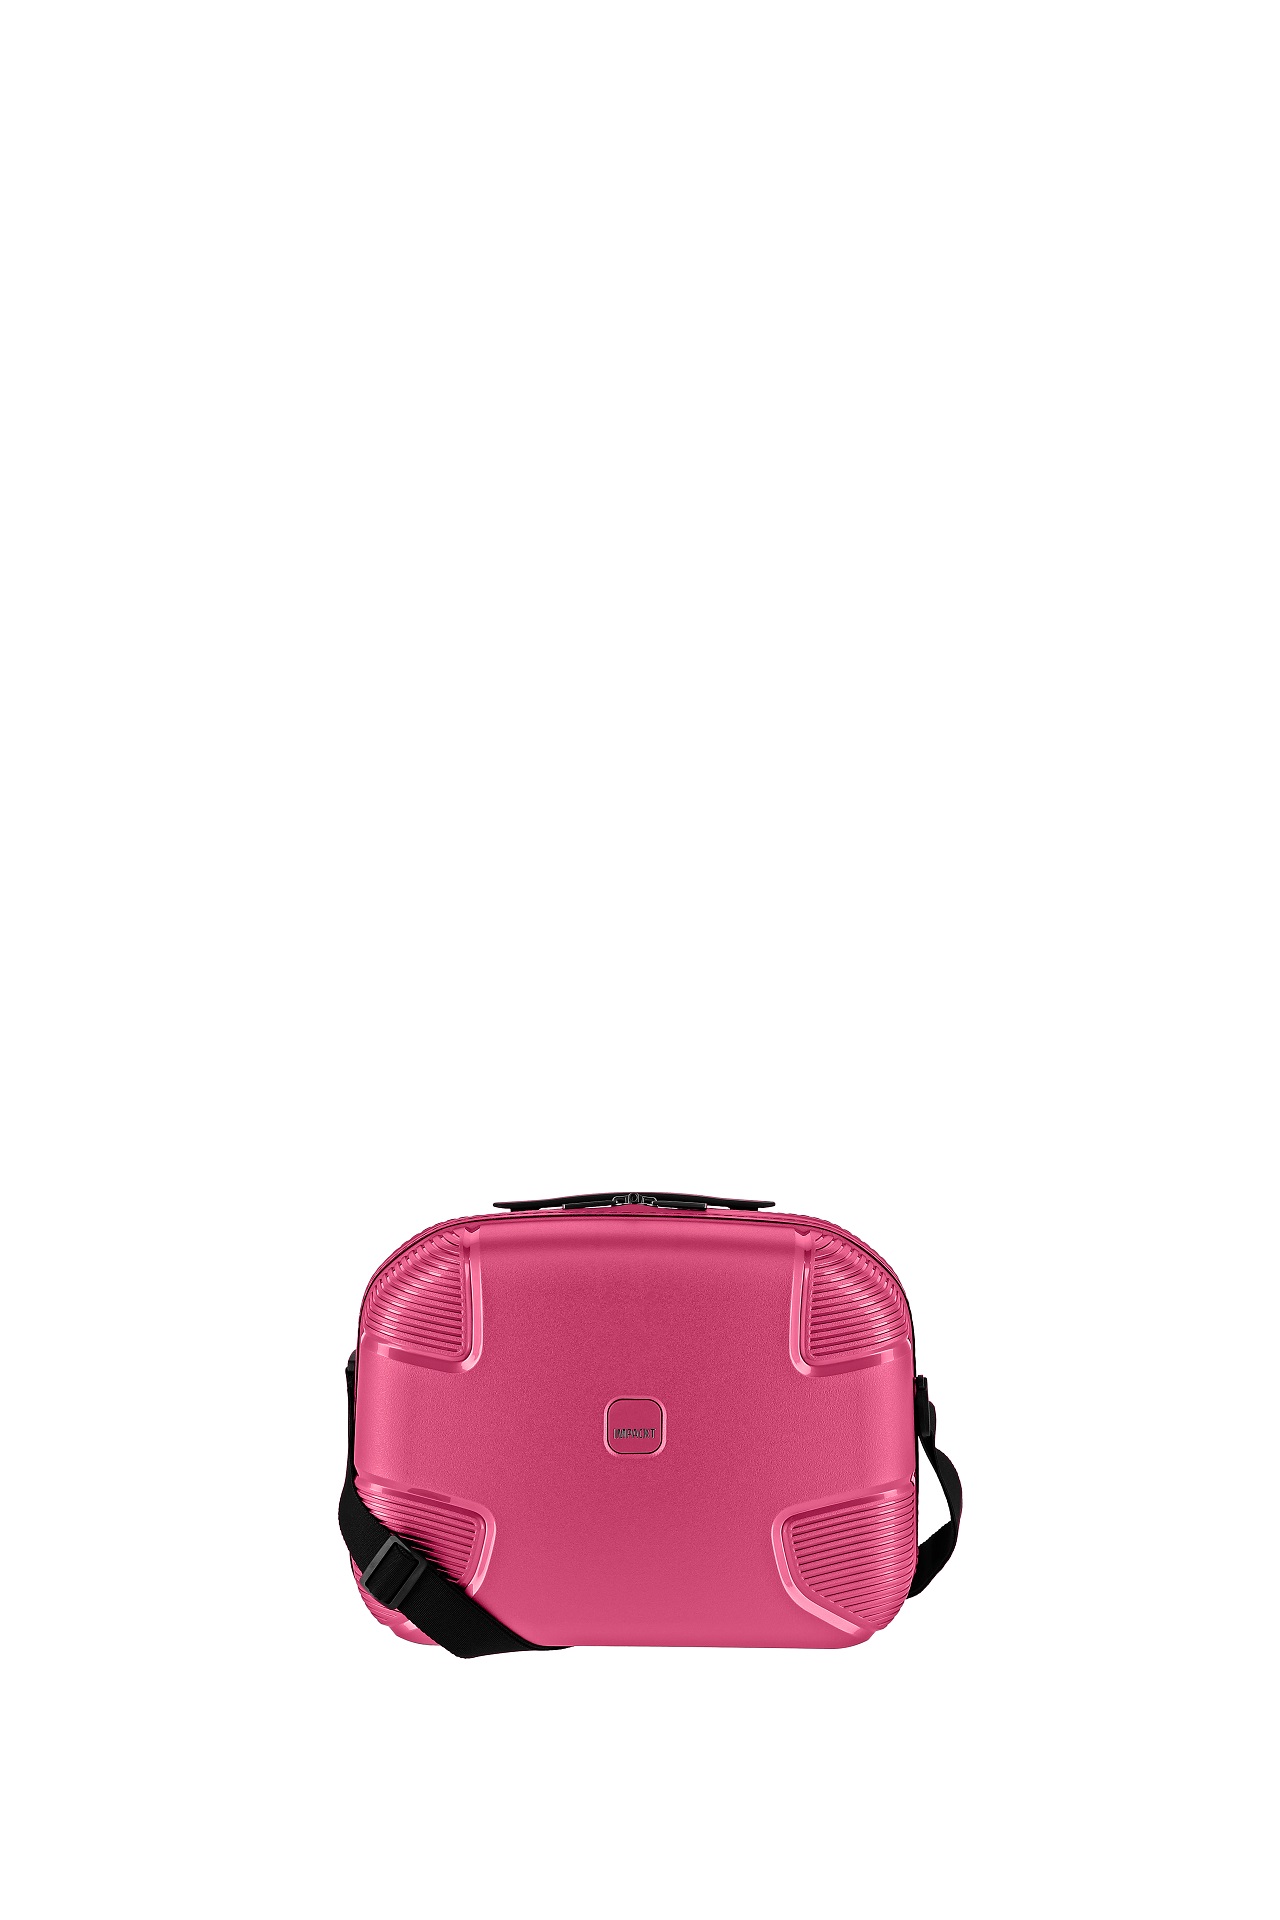 E-shop IMPACKT IP1 Beauty case Flora pink